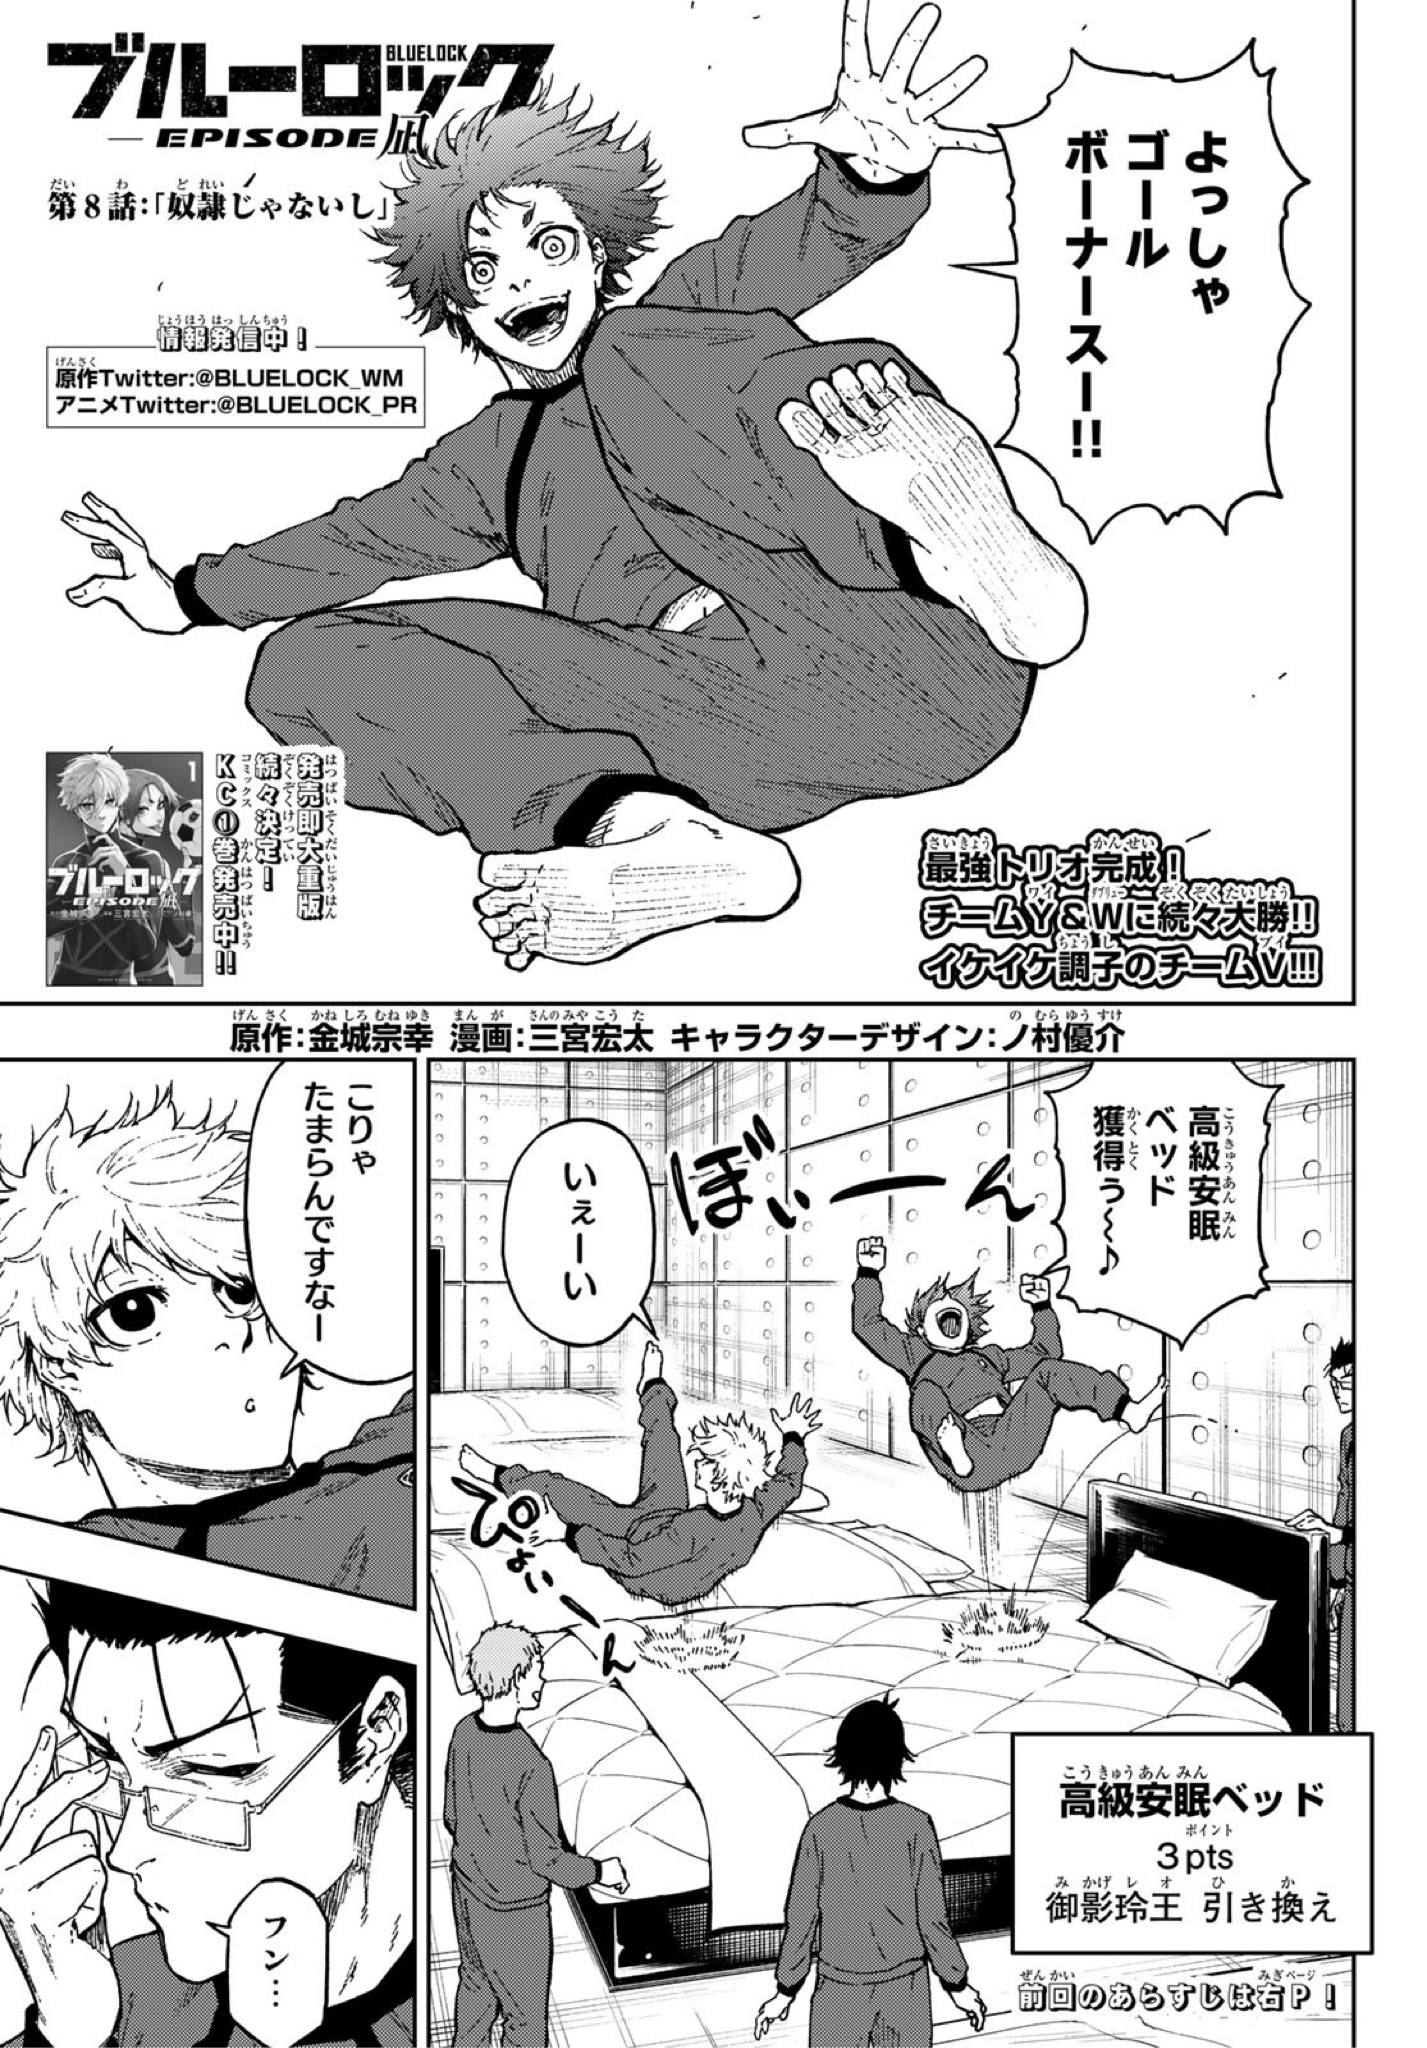 Blue Lock - EPISODE Nagi (Manga), Blue Lock Wiki